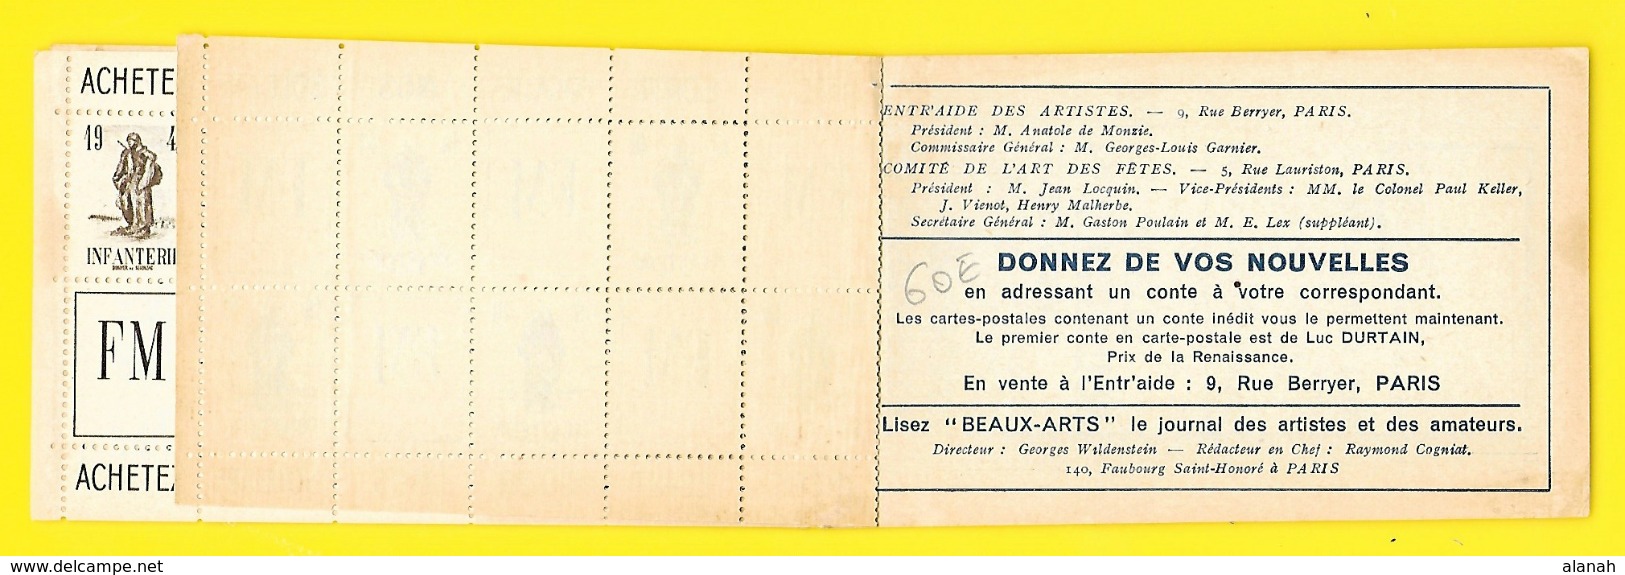 Carnet Complet 20 Vignettes Des Armées 1940 Franchise Militaire Infanterie Dunoyer De Segonzac - Vignettes Militaires